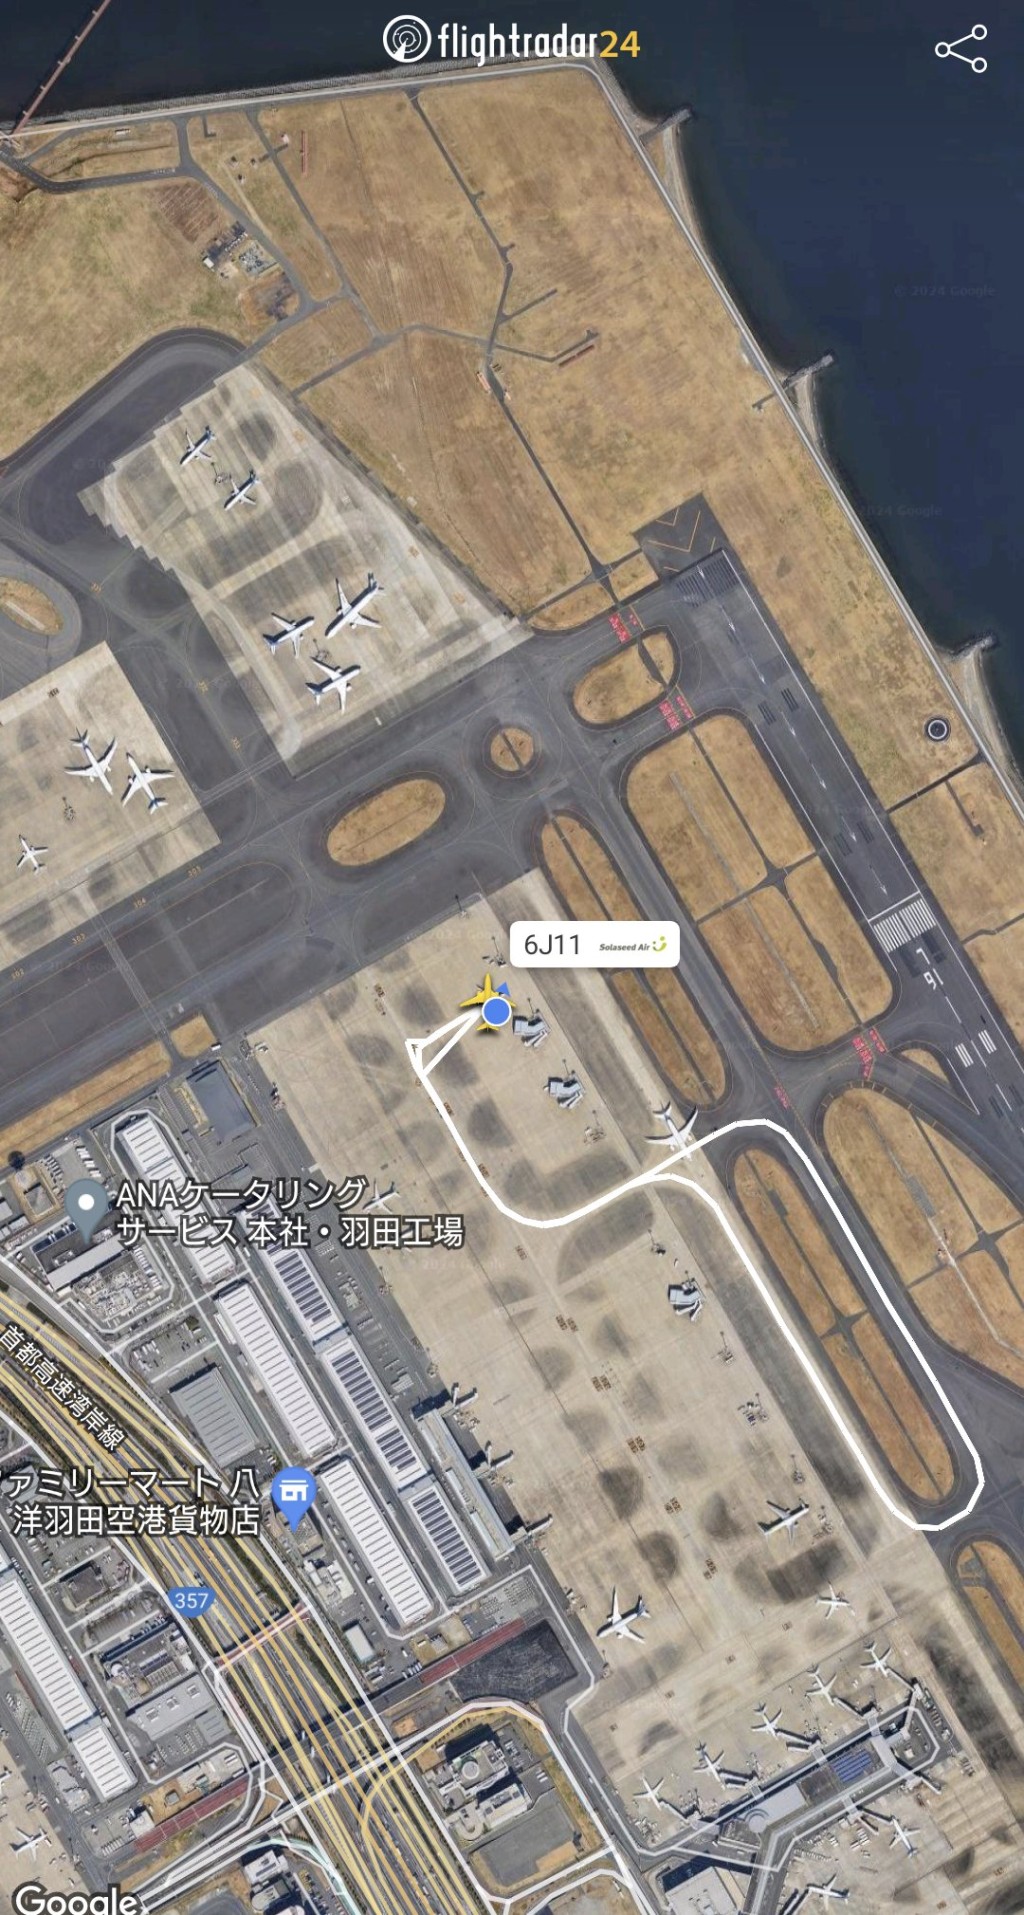 网上航班资讯显示，飞机在跑道兜大圈折返停机坪，随后重新新起飞。 flightradar24